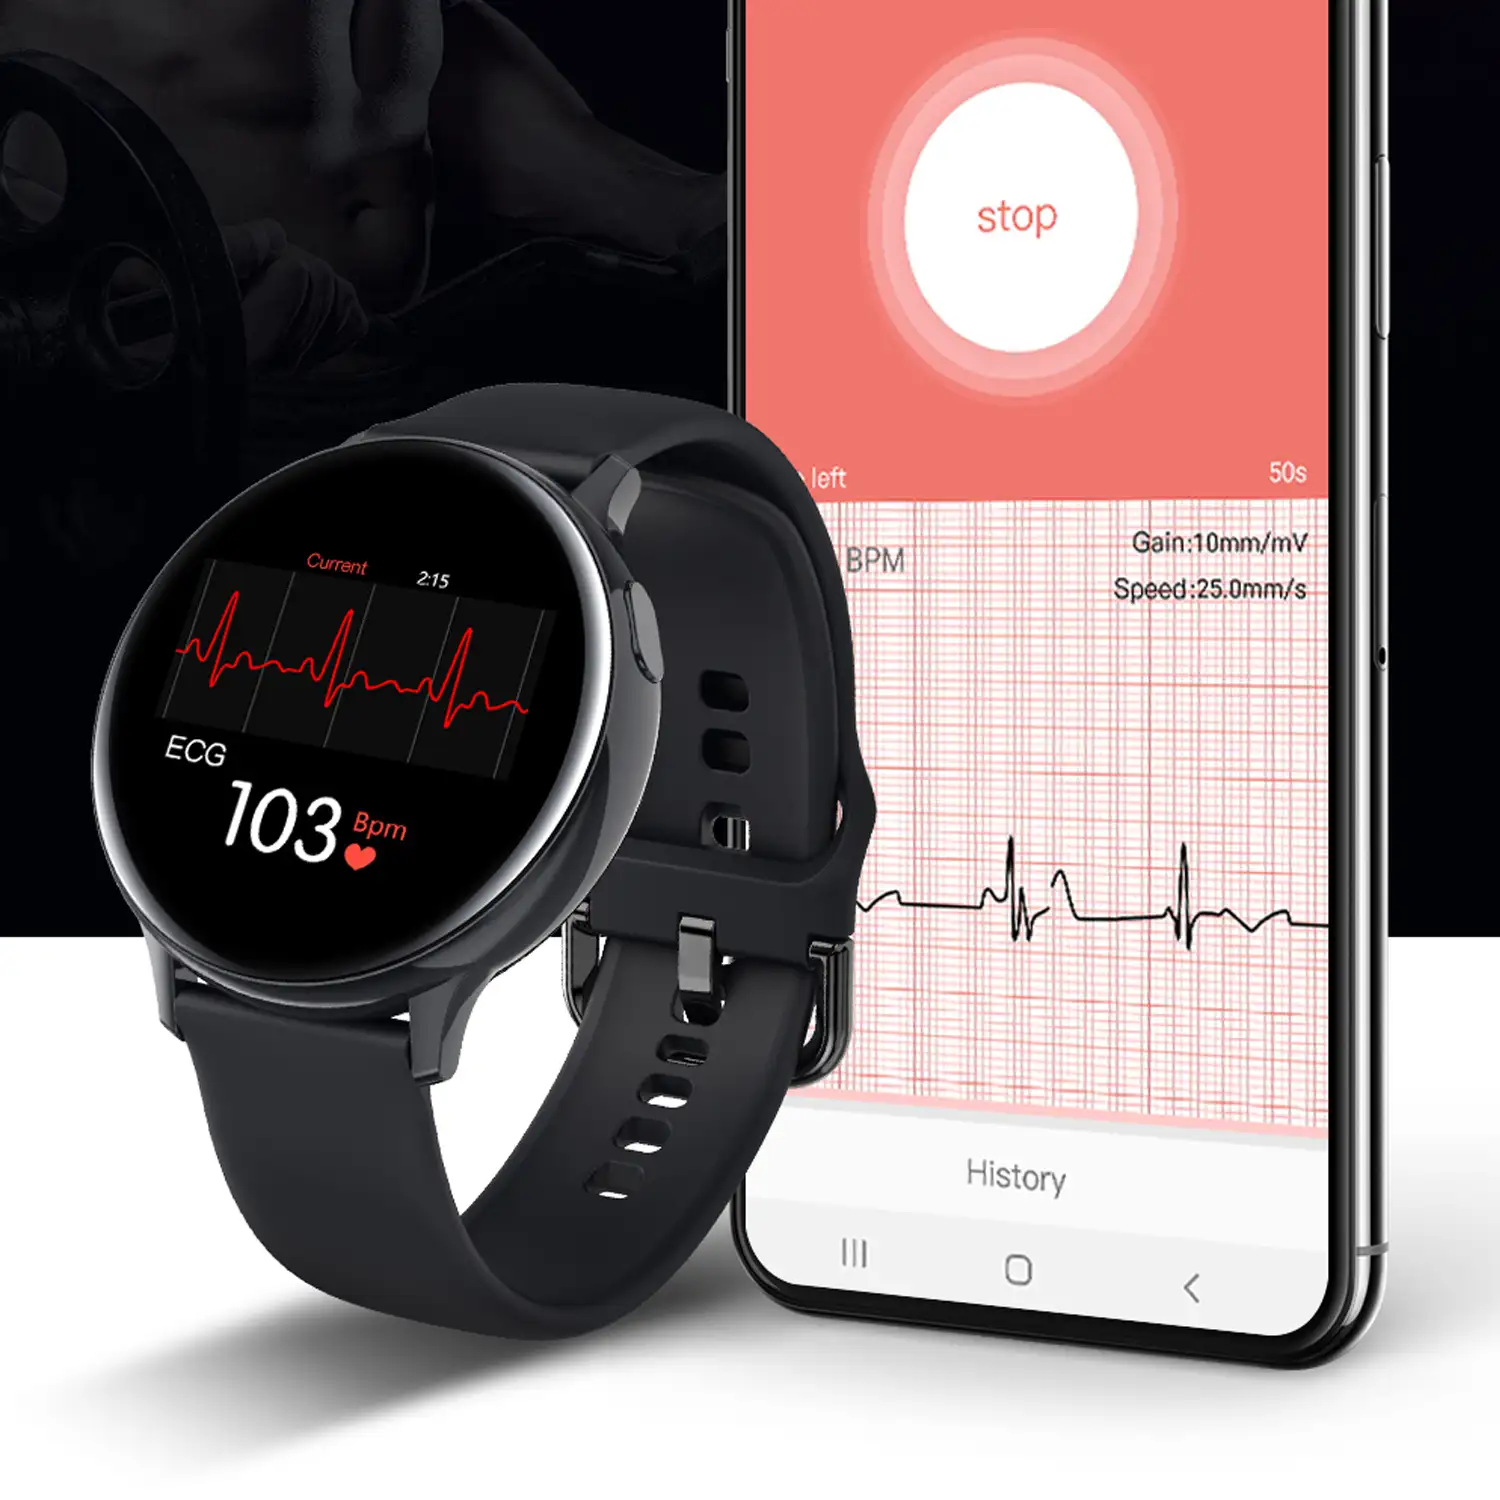 Smartwatch deportivo S30, con notificaciones de aplicaciones. Monitor de tensión y O2 en sangre. Batería de larga duración.